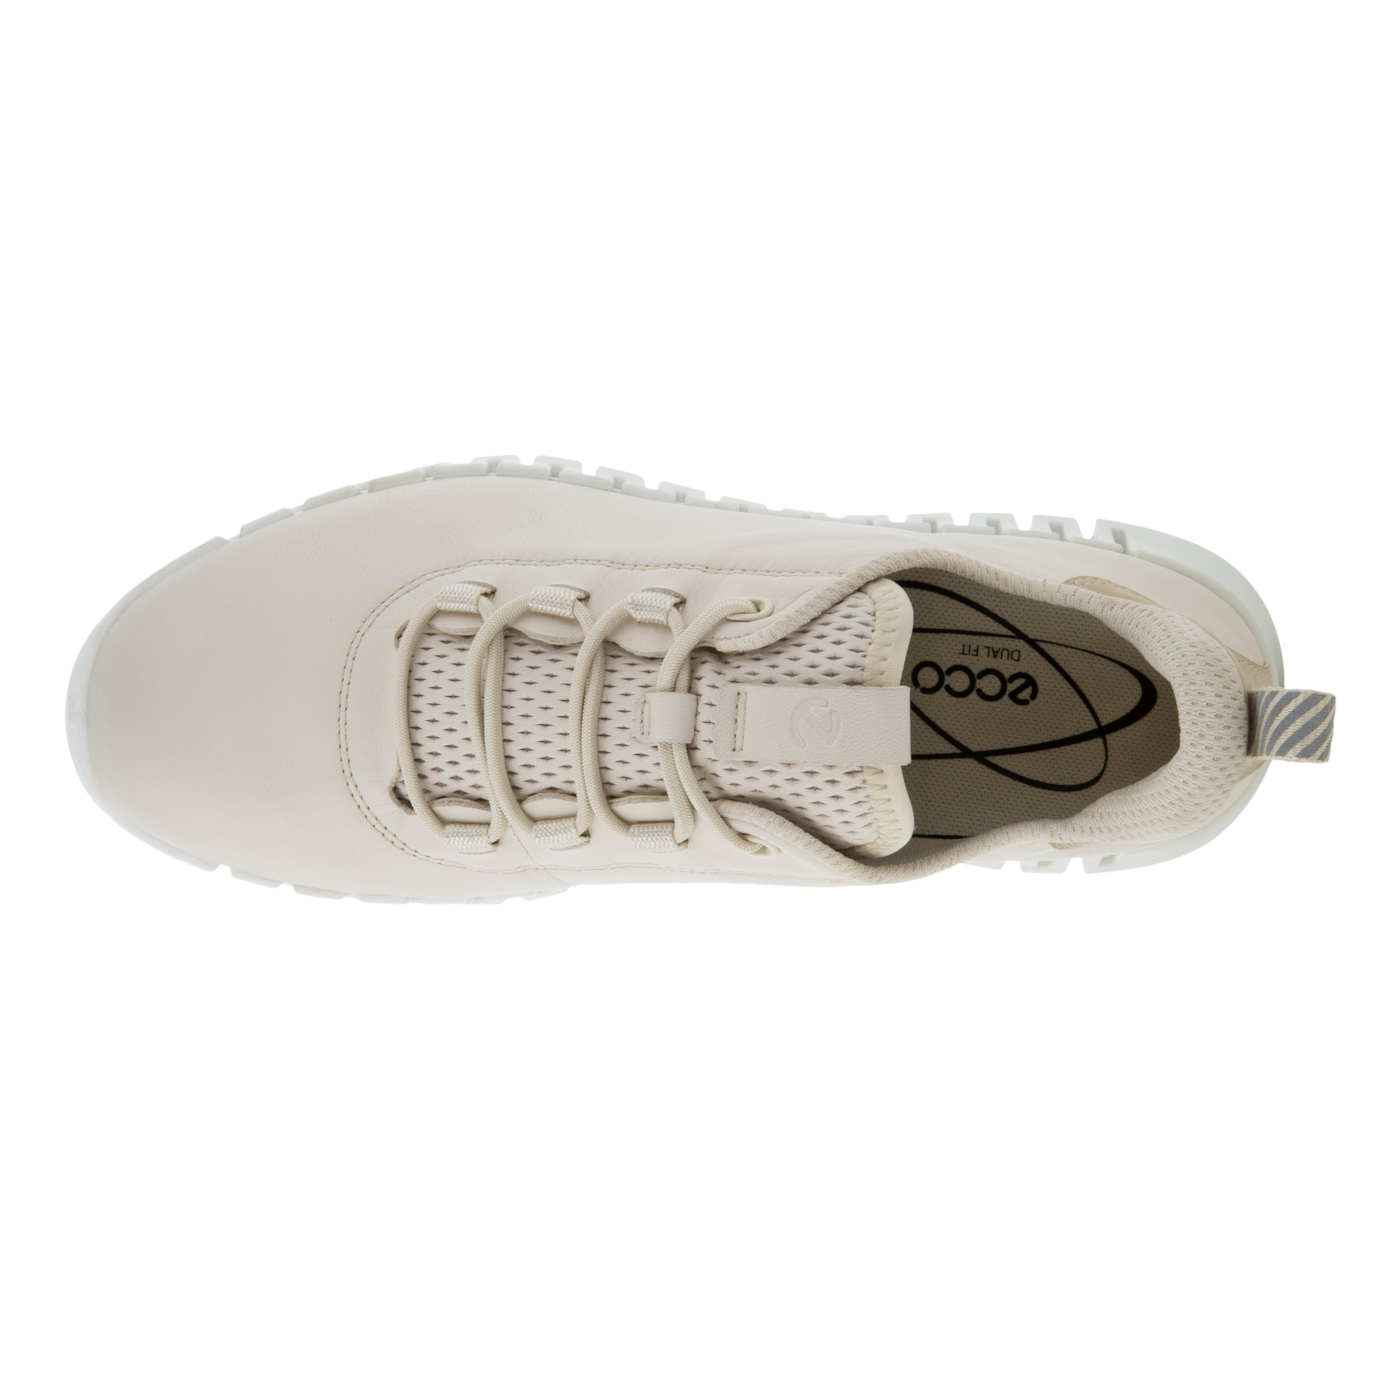 DEPORTIVA ECCO 218203 Gruuv Flexible Sole Sneakers LIMESTONE